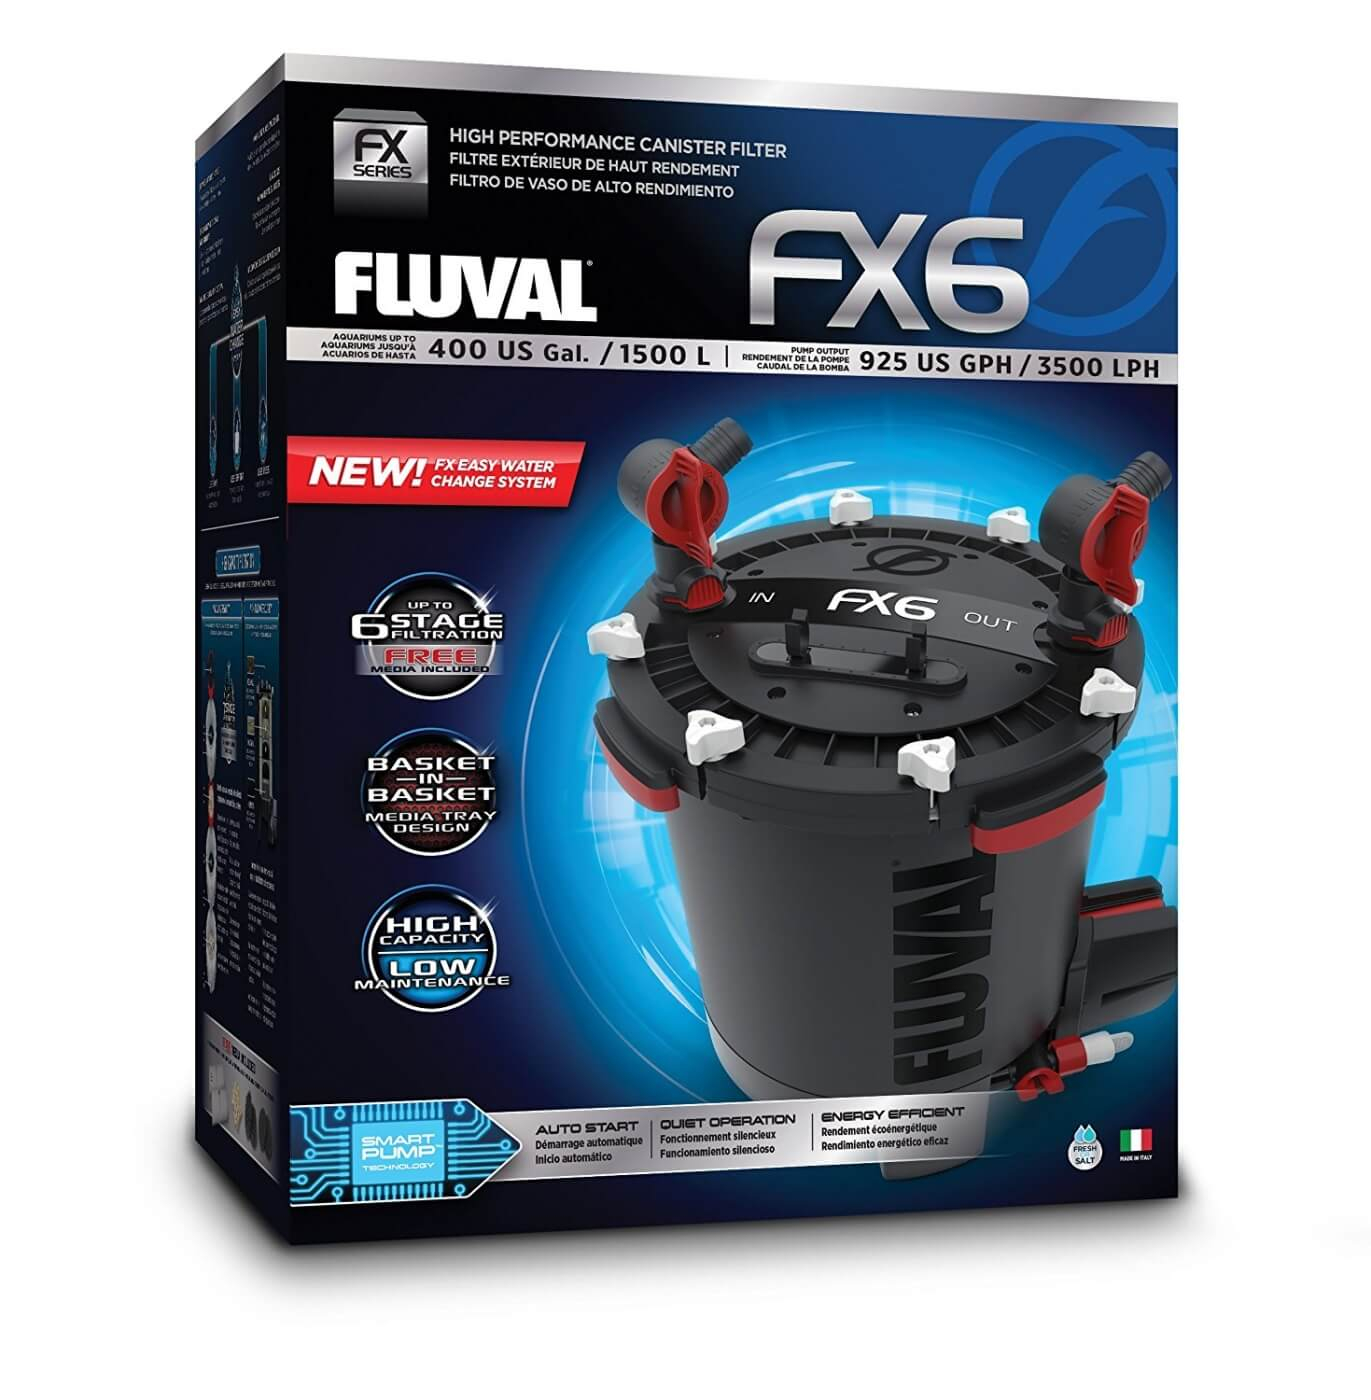 Filtre externe FX6 Fluval jusqu'à 1500 L